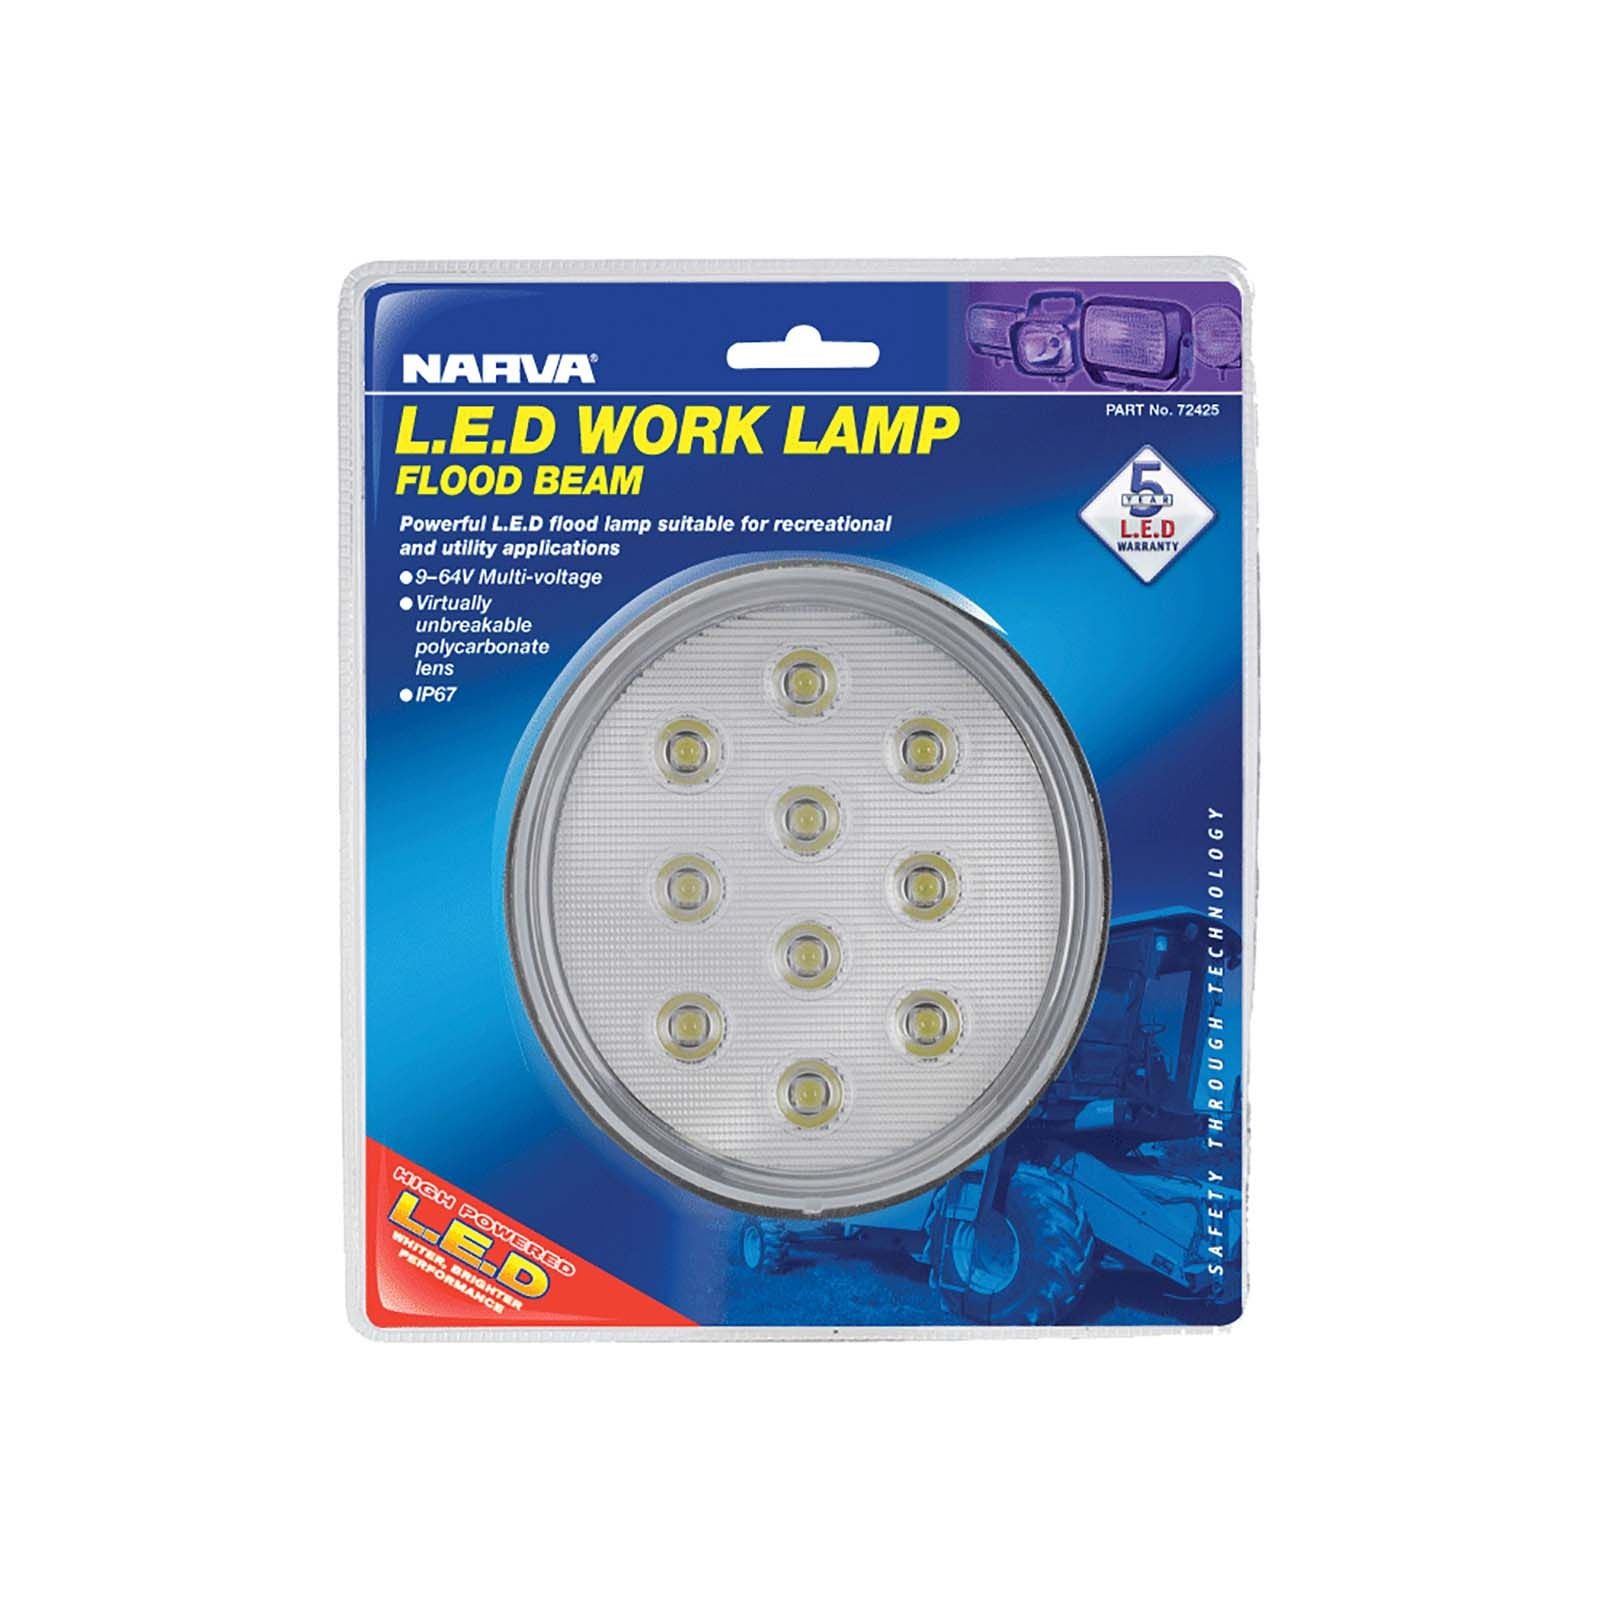 9-33V LED Work Lamp Flood Beam